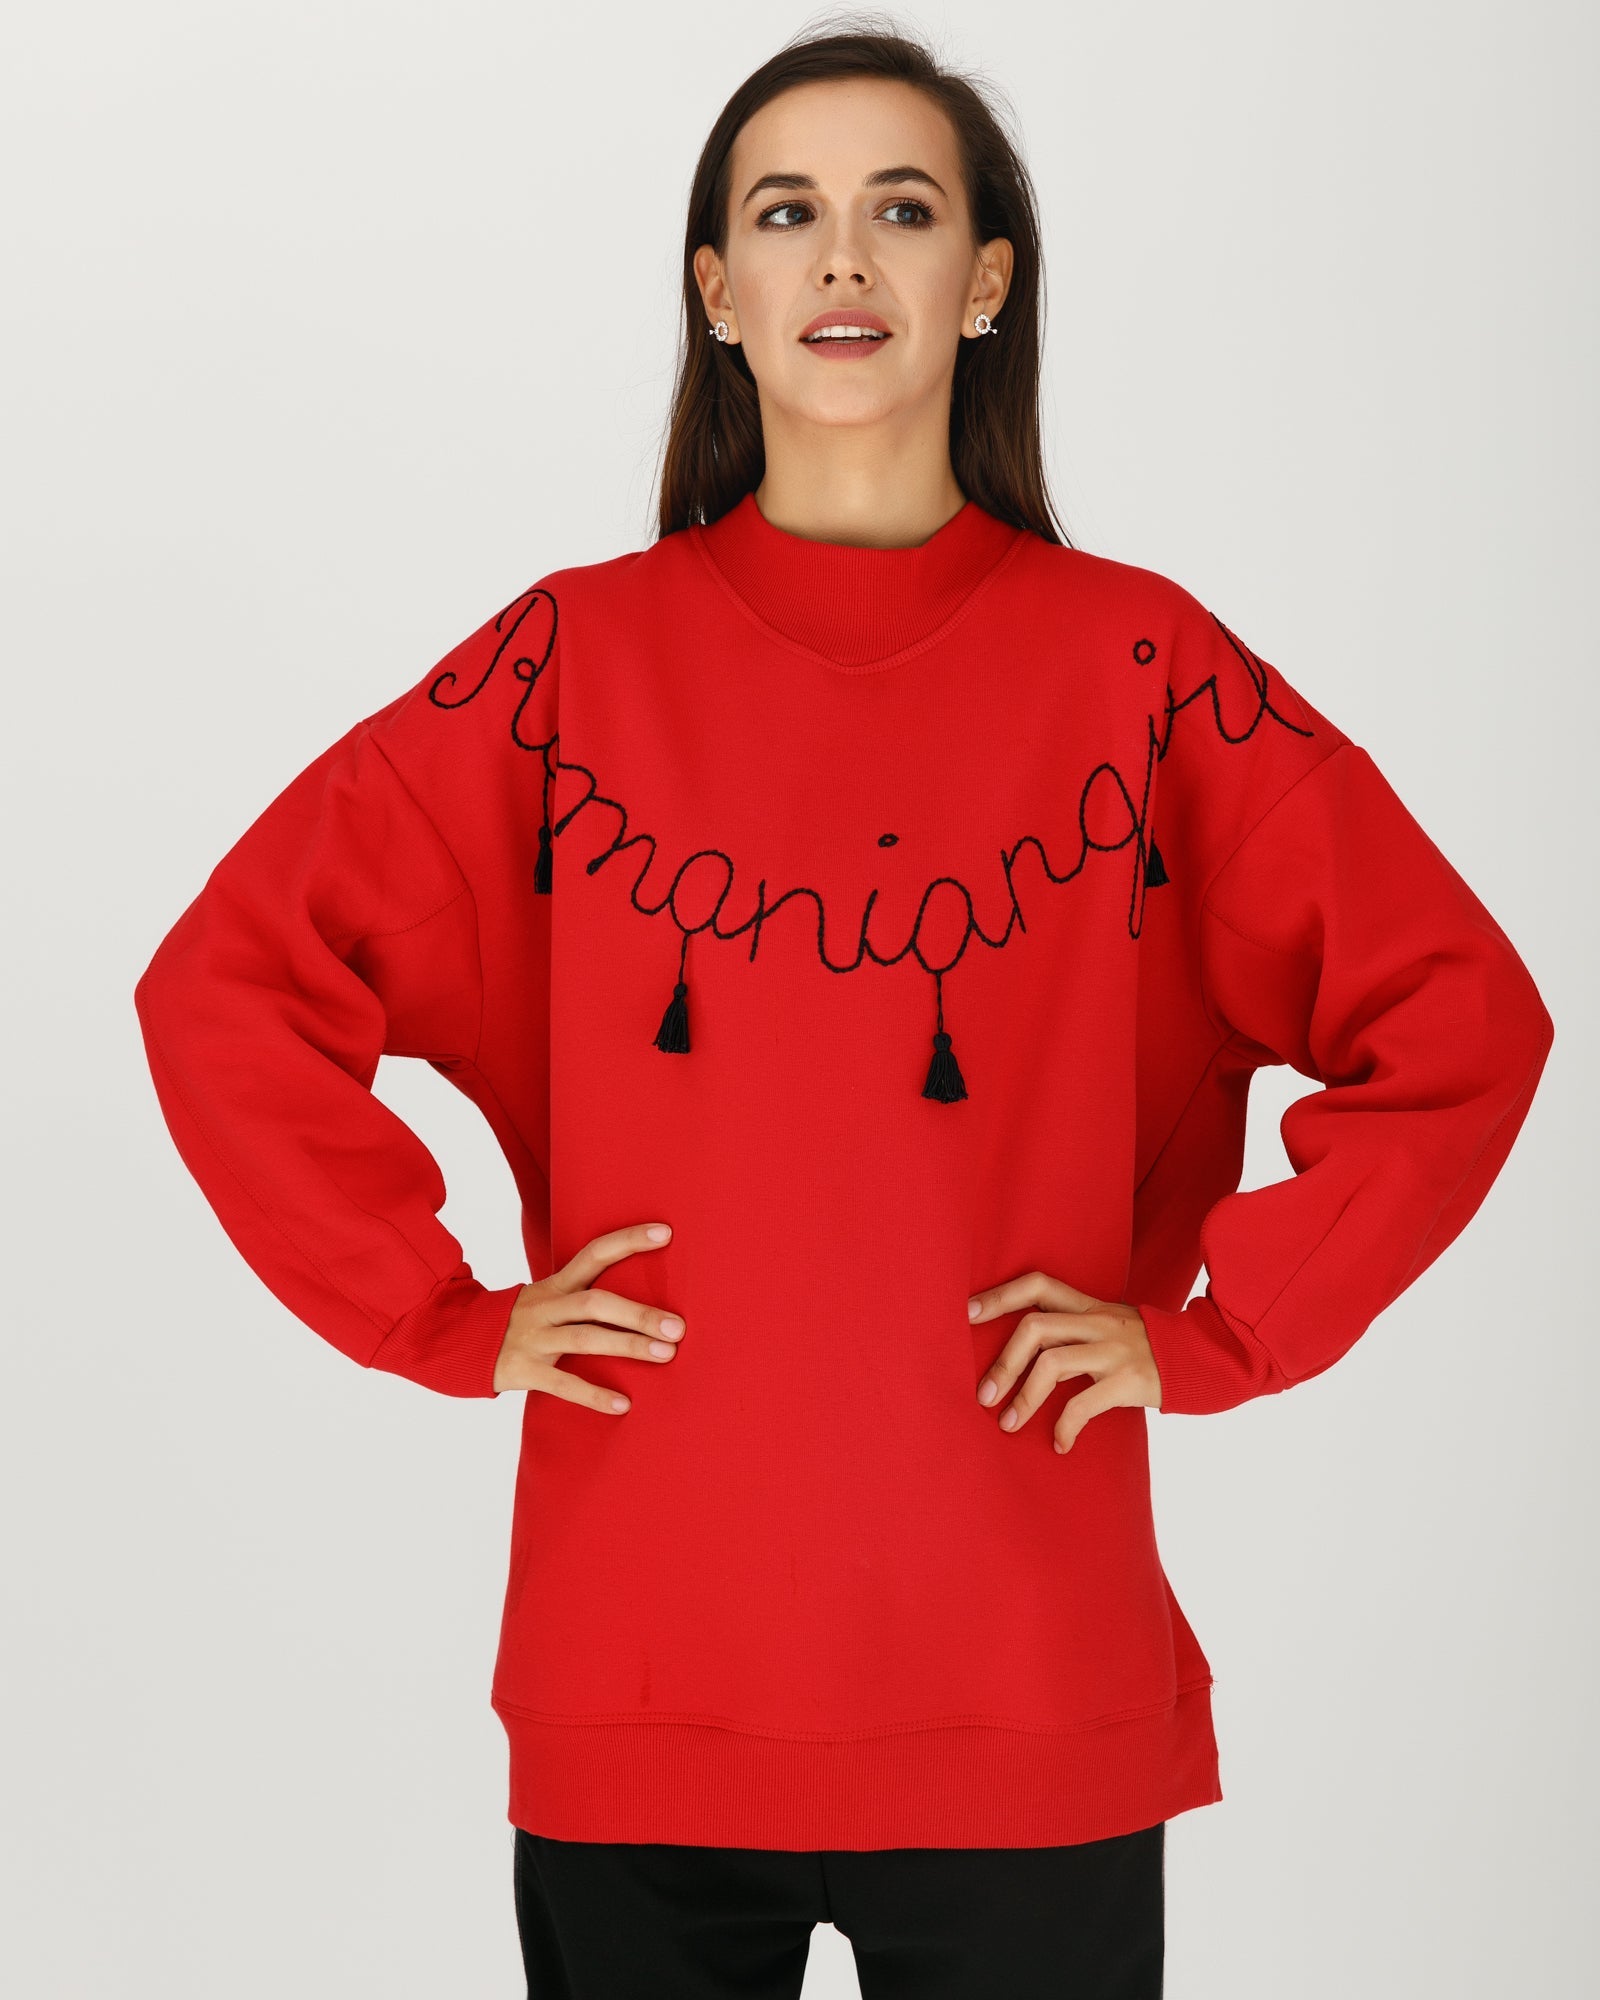 "Romanian Girl" hand-embroidered sweatshirt